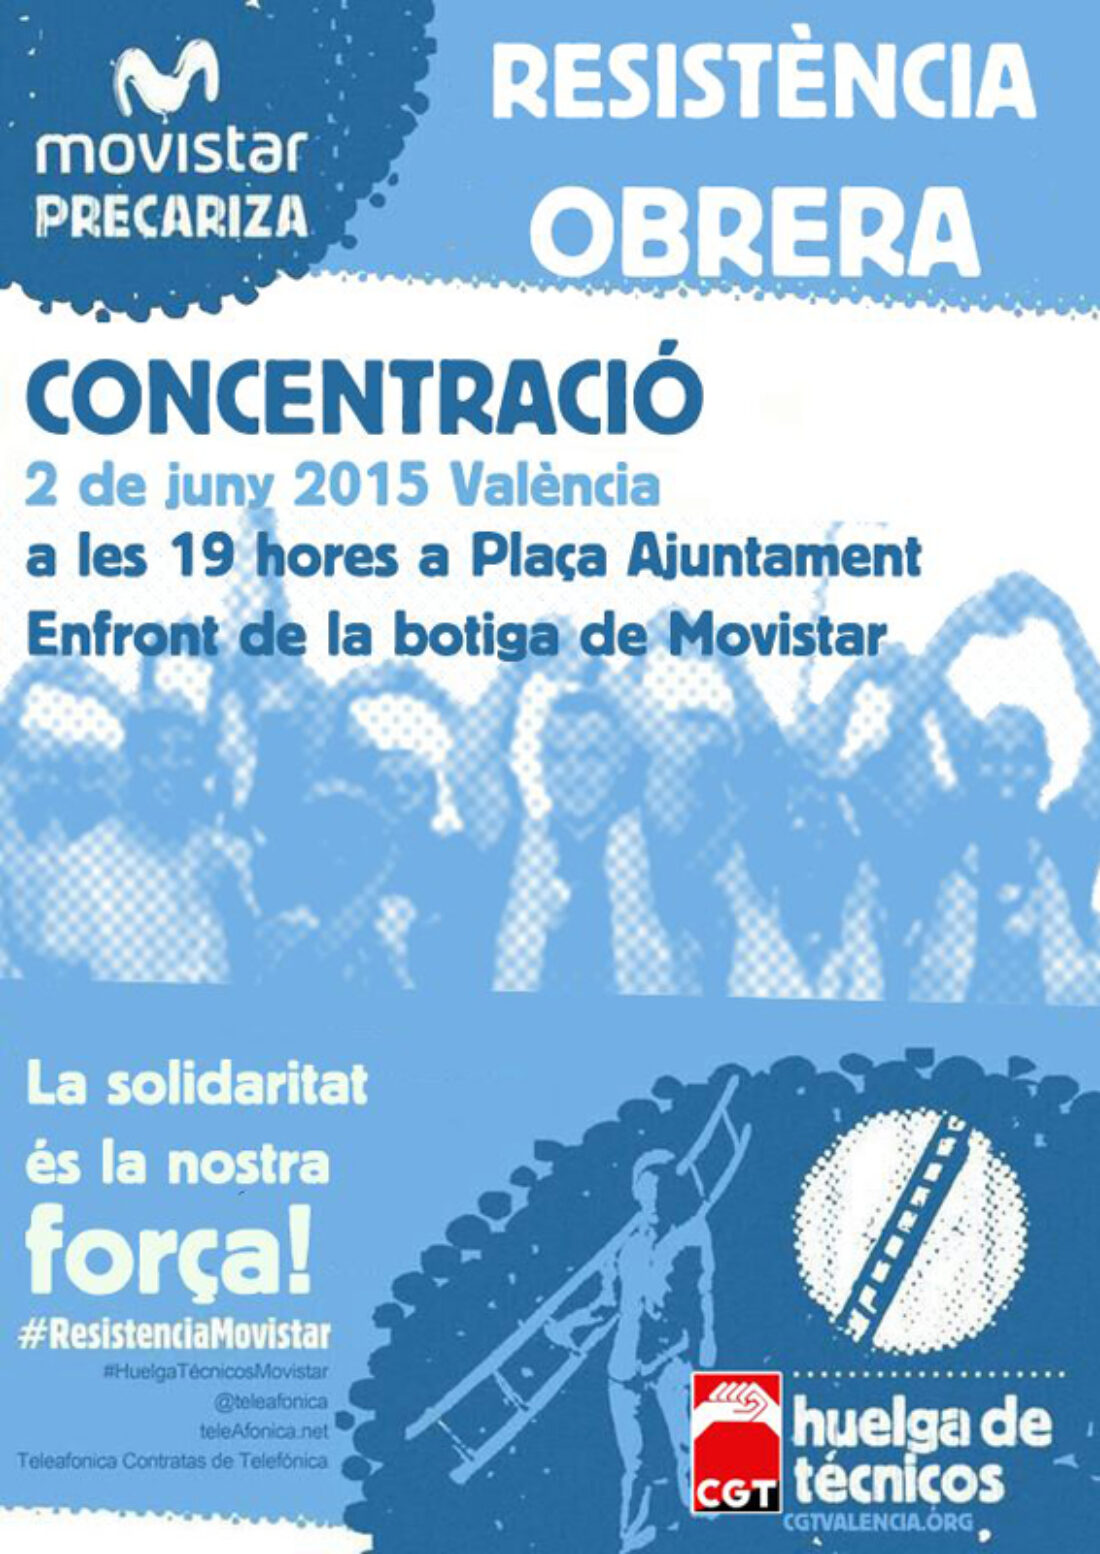 Concentraciones en apoyo a las y los trabajadores de Movistar, 2 y 9 de junio en Valencia